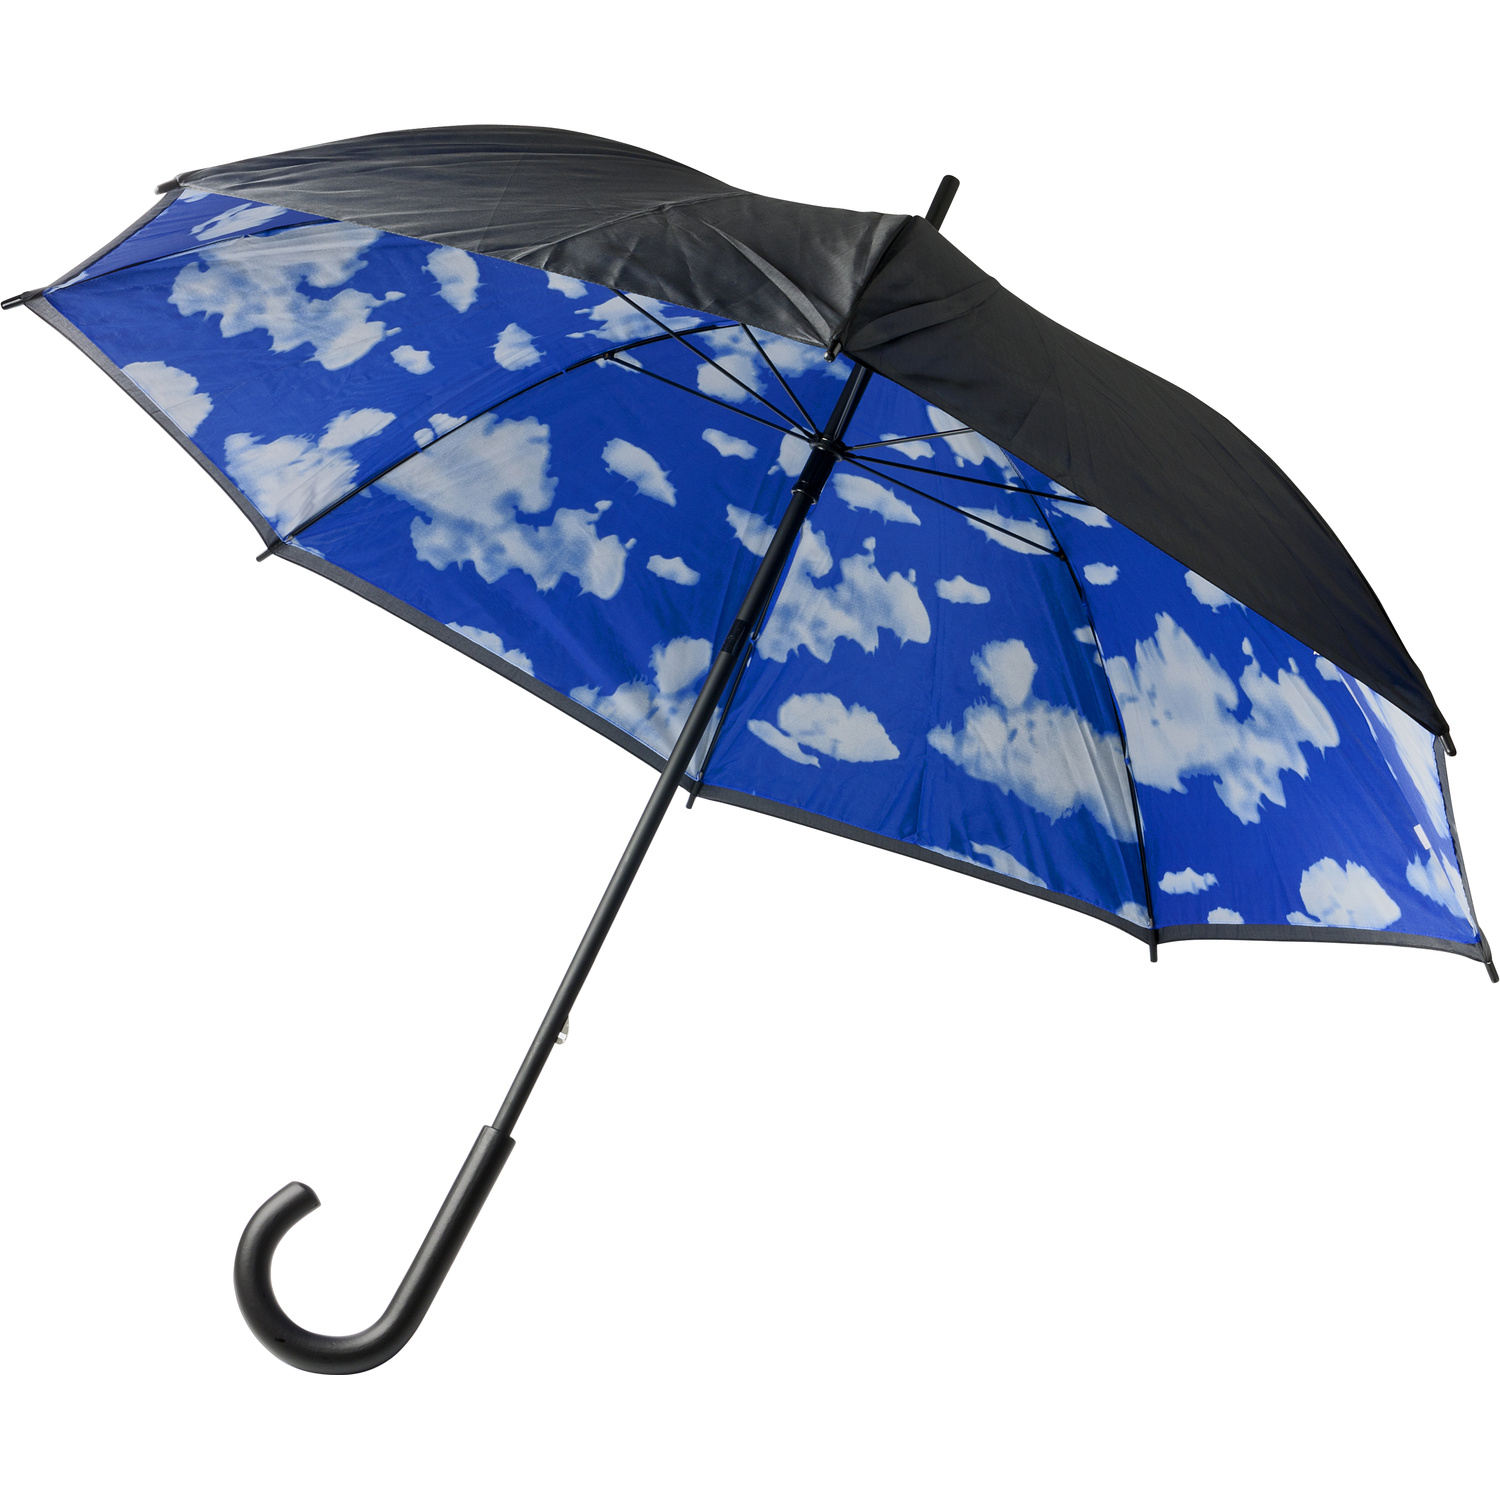 004136 018999999 3d045 ins pro01 fal - Double canopy umbrella